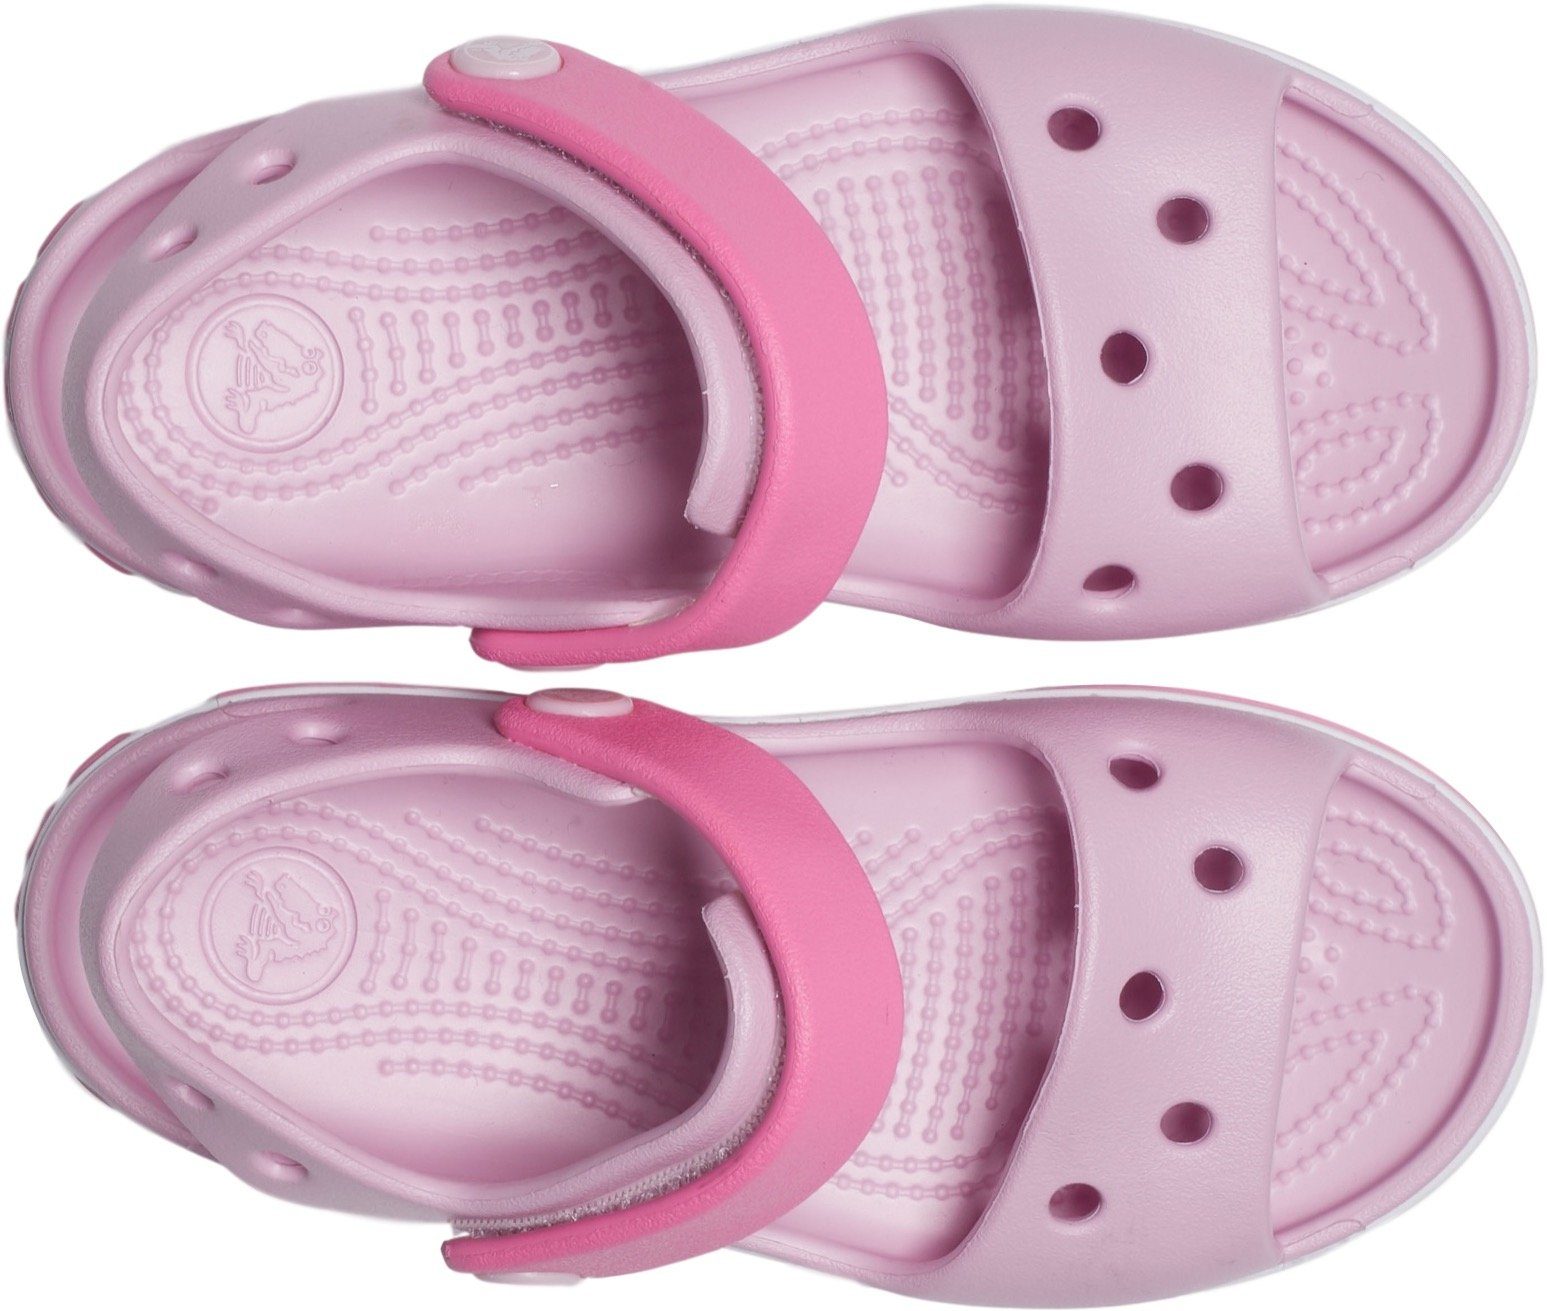 Crocs Crocband Badesandale mit praktischem Klettverschluss rosa-pink